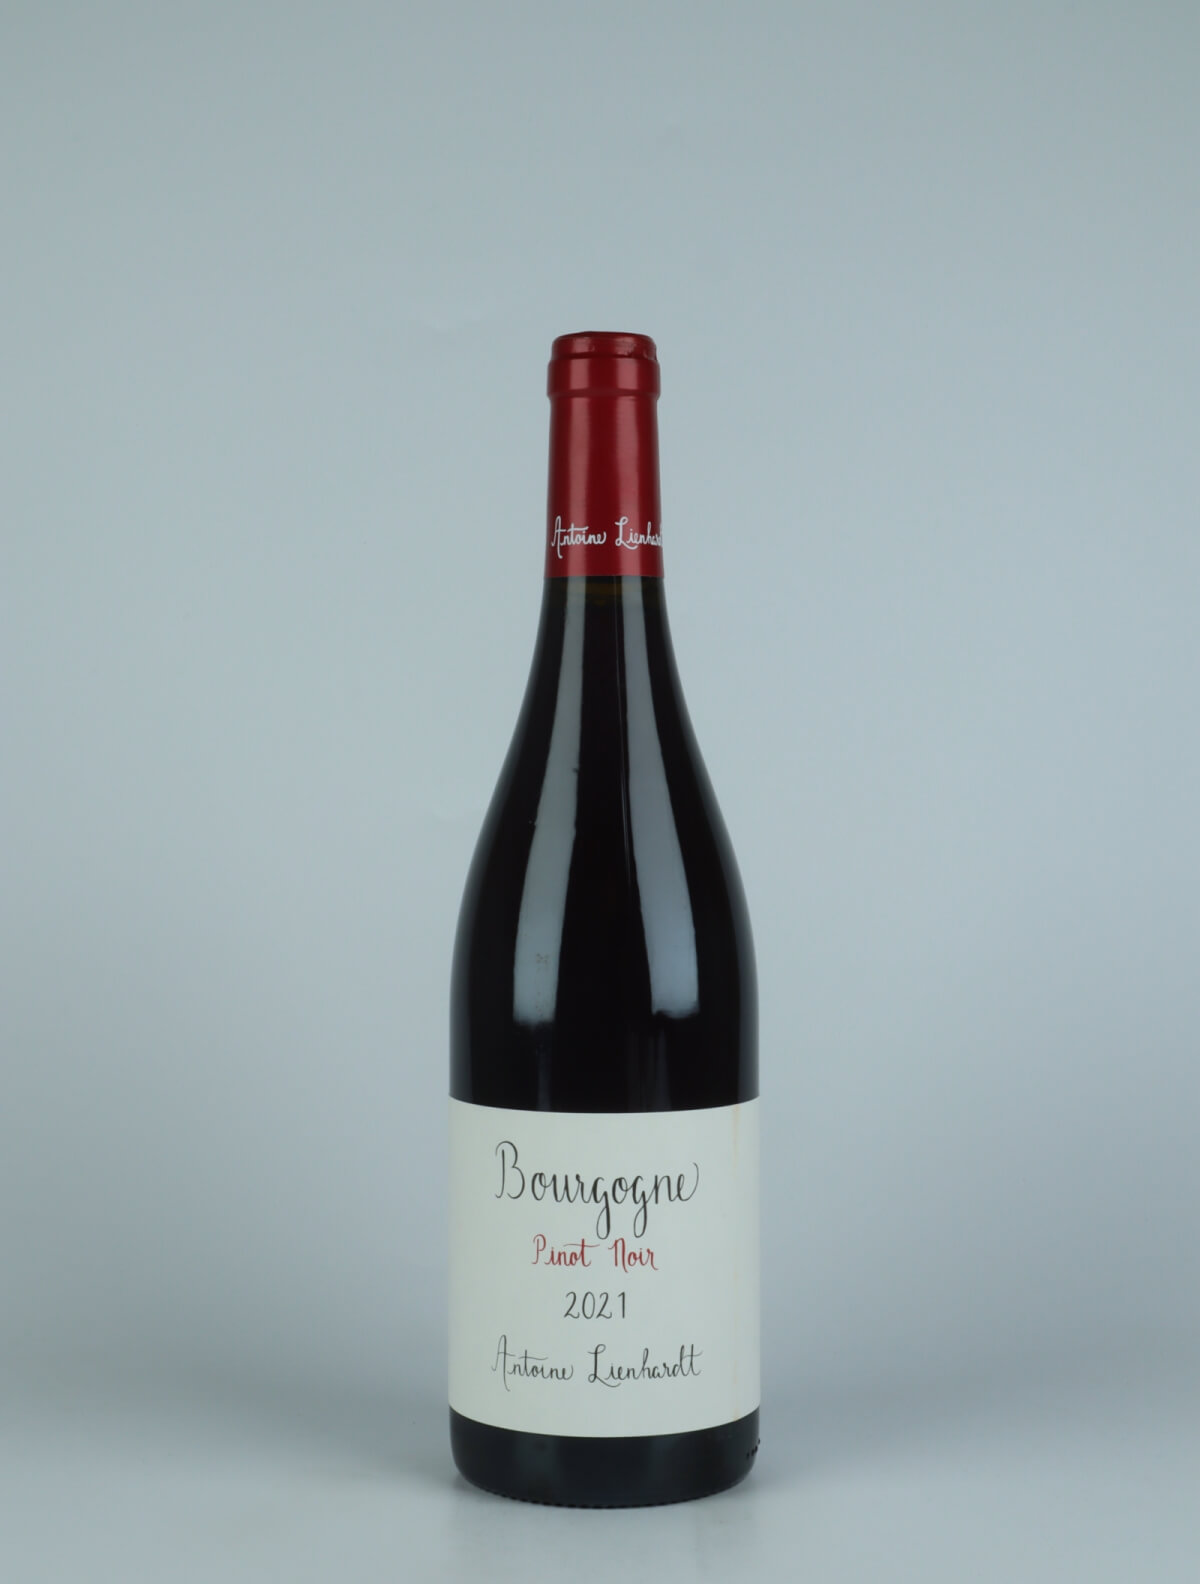 A bottle 2021 Bourgogne Rouge Red wine from Antoine Lienhardt, Burgundy in France